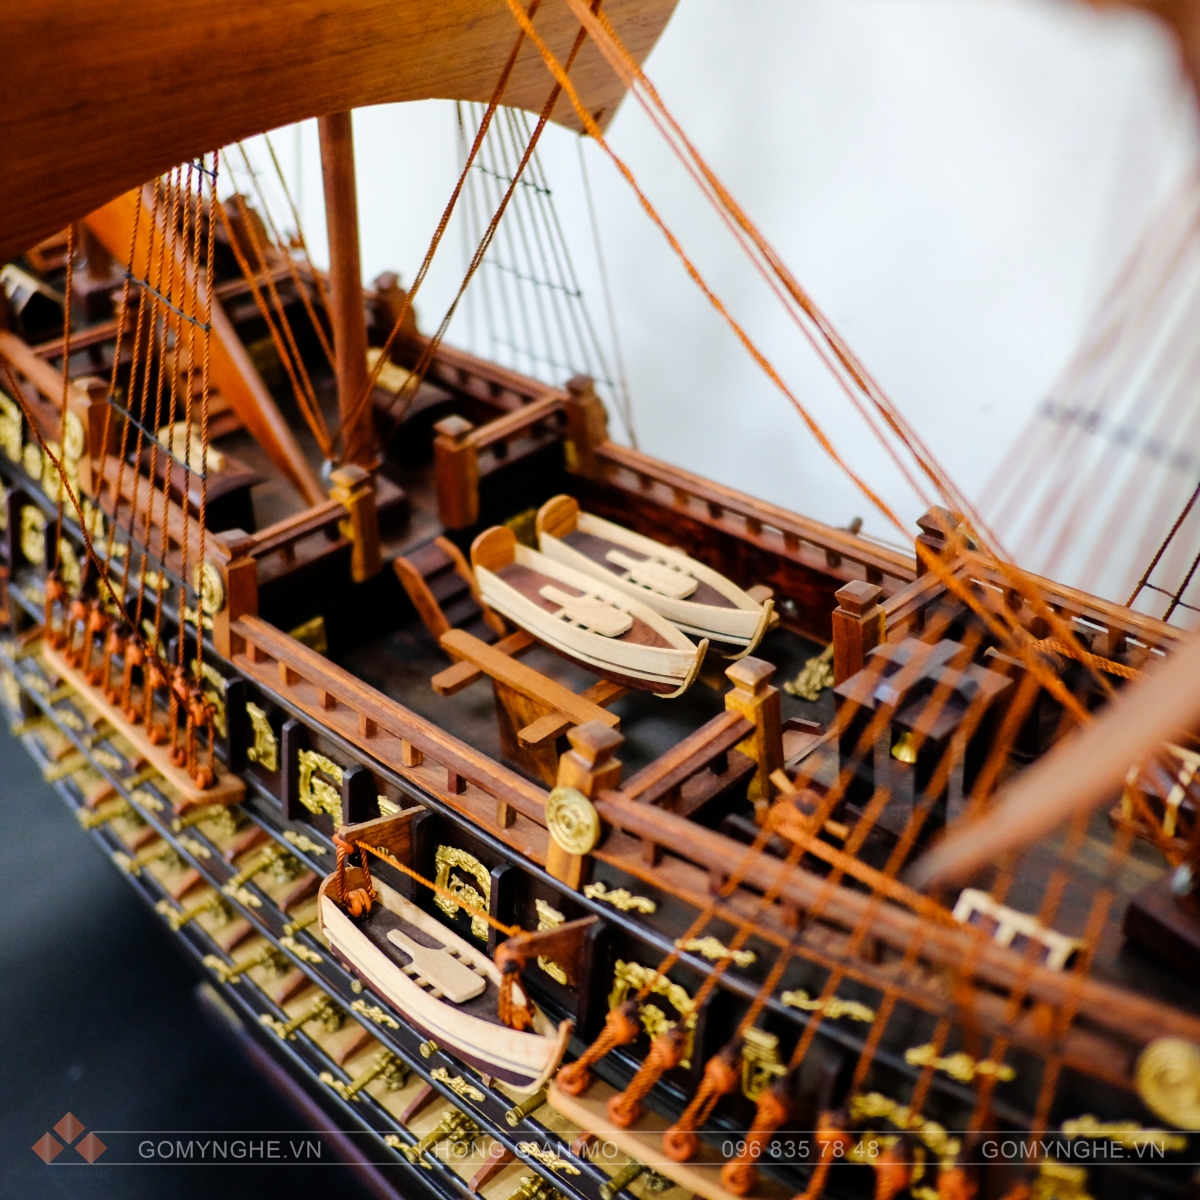 Thuyền buồm phong thủy gỗ mỹ nghệ đẹp, sang trọng